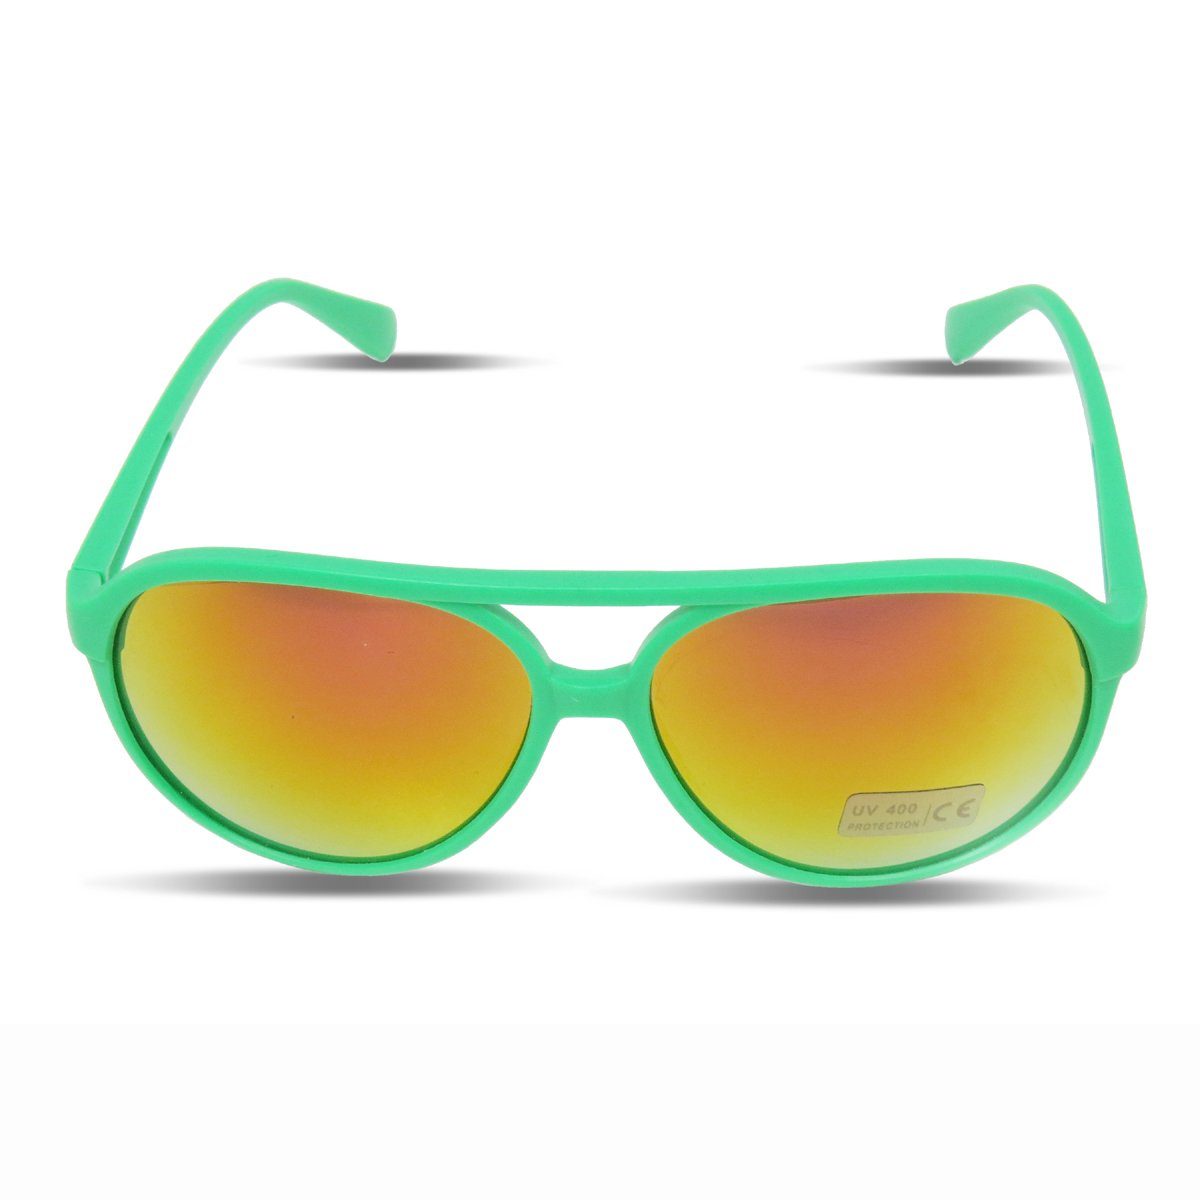 Sonia Originelli Sonnenbrille Sonnenbrille Neon Knallig Verspiegelt Fun Brille Onesize, Gläser: Verspiegelt gruen